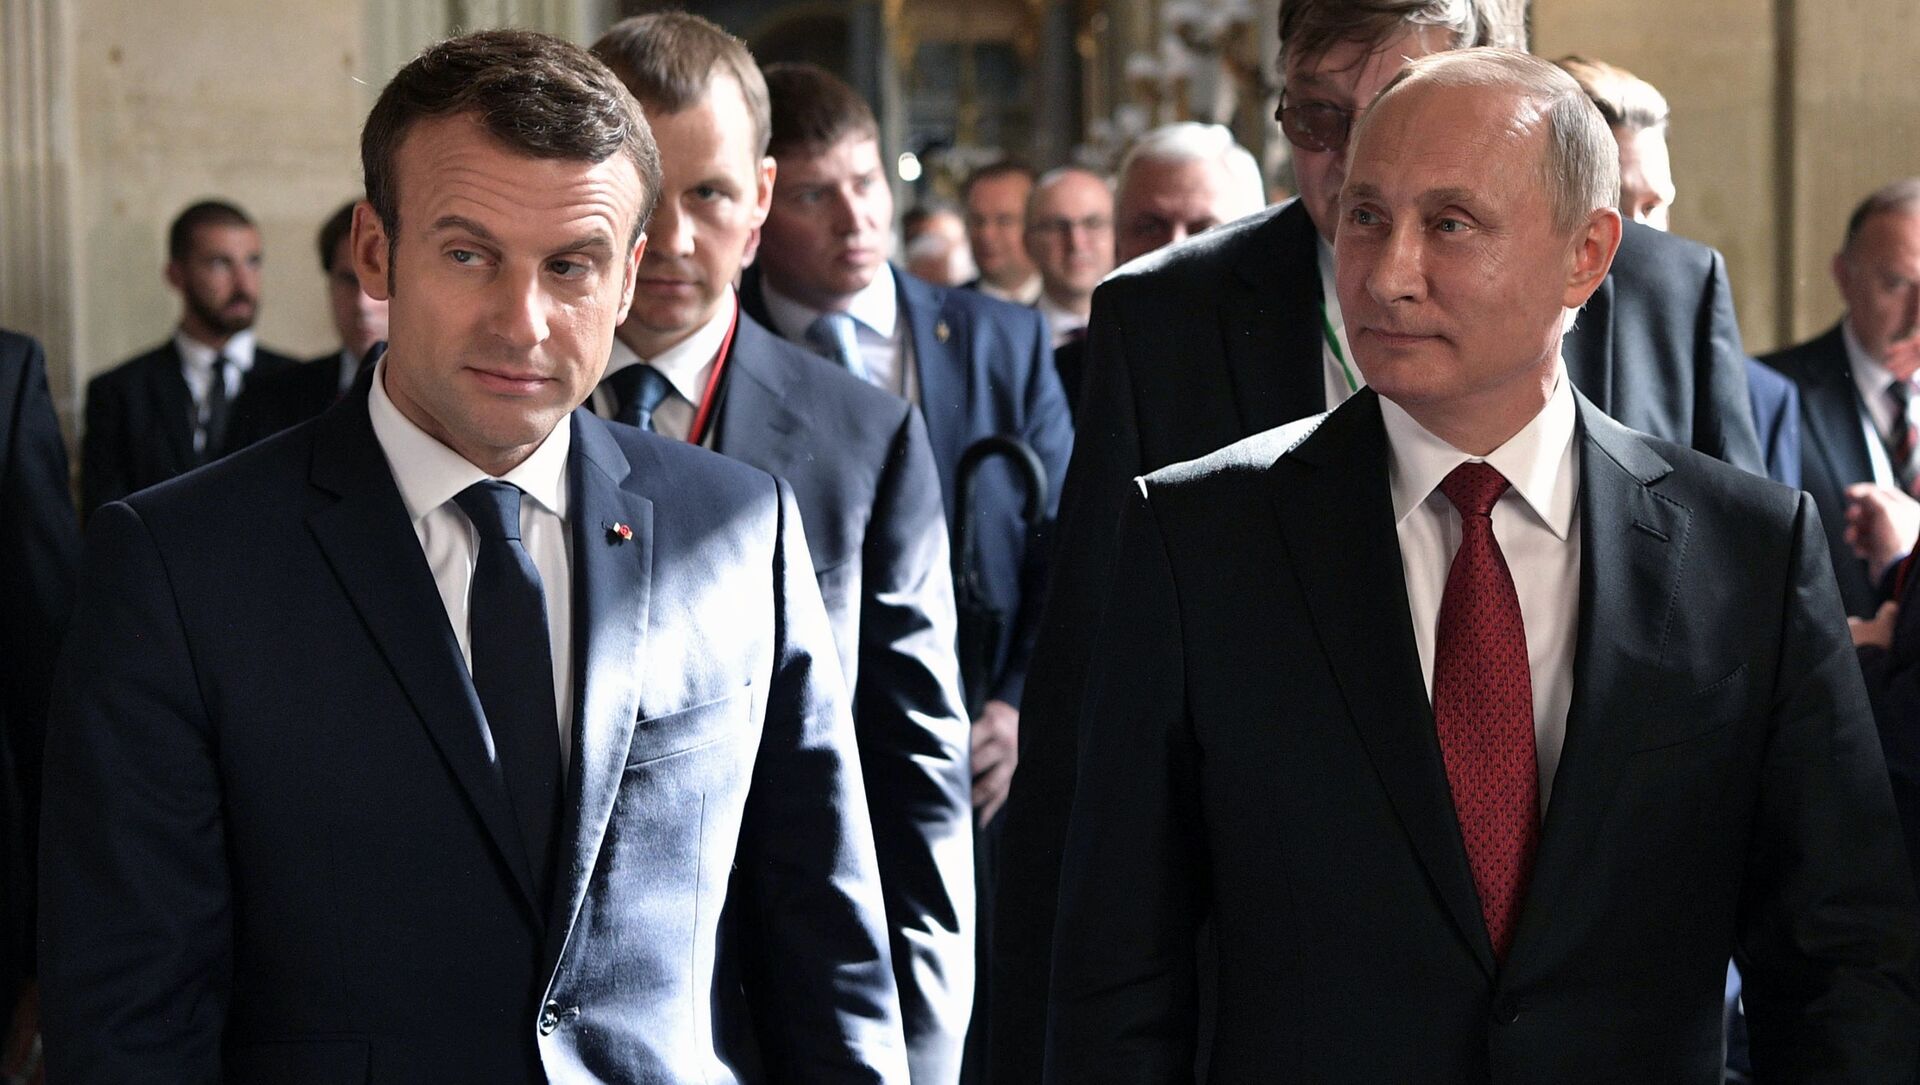 马克龙向普京表示“法国准备捍卫乌克兰领土完整” – 1024研究所